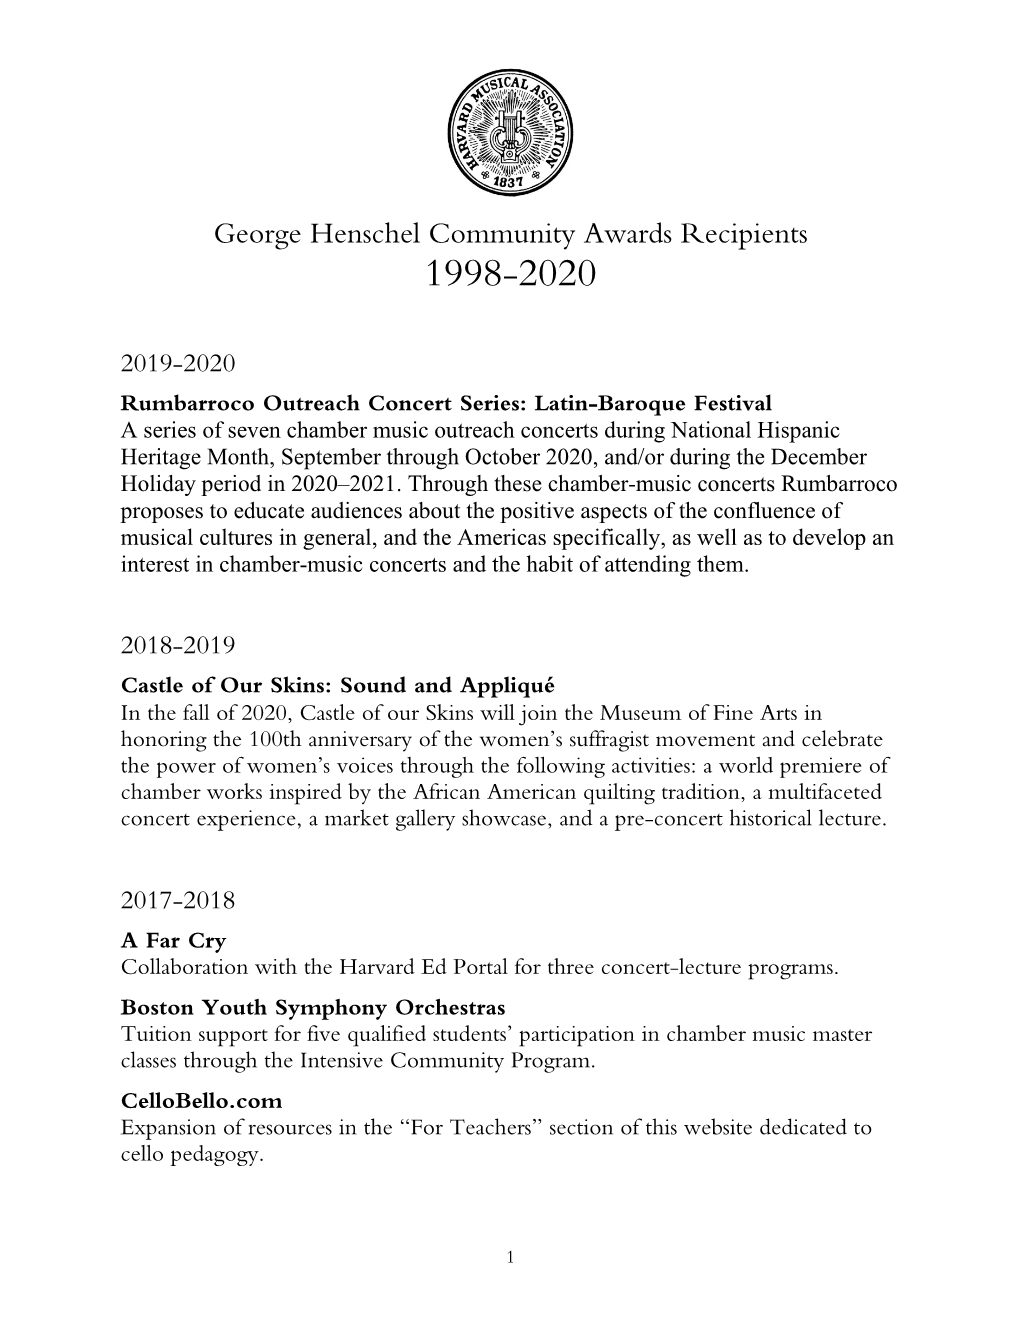 George Henschel Community Awards Recipients 1998-2020